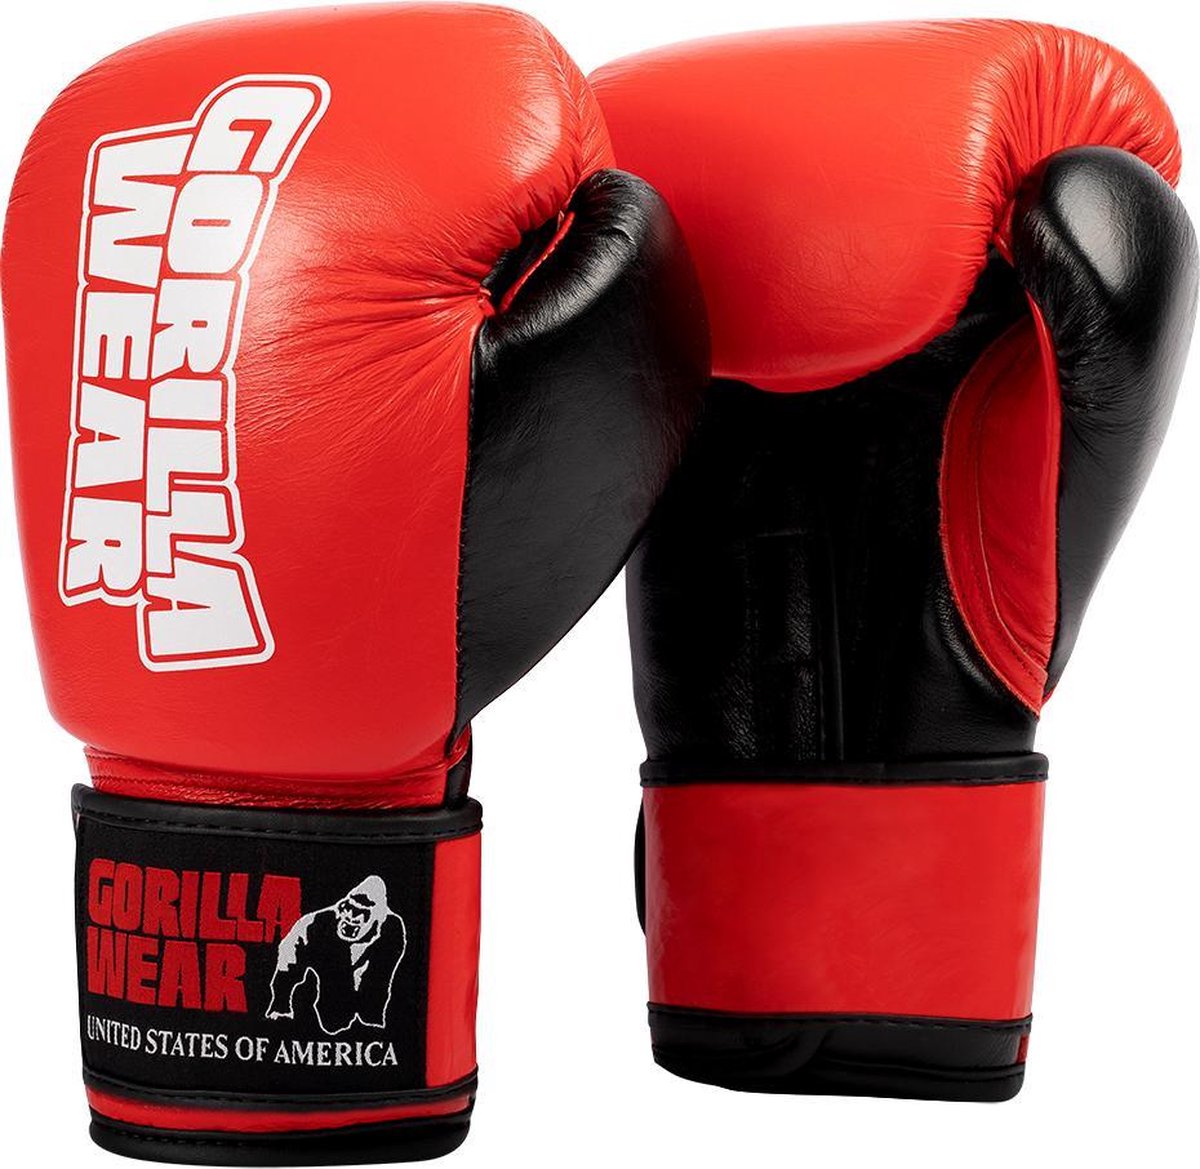 Gorilla Wear Ashton Pro Bokshandschoenen - Boxing Gloves - Boksen - Rood/Zwart - 18 oz review